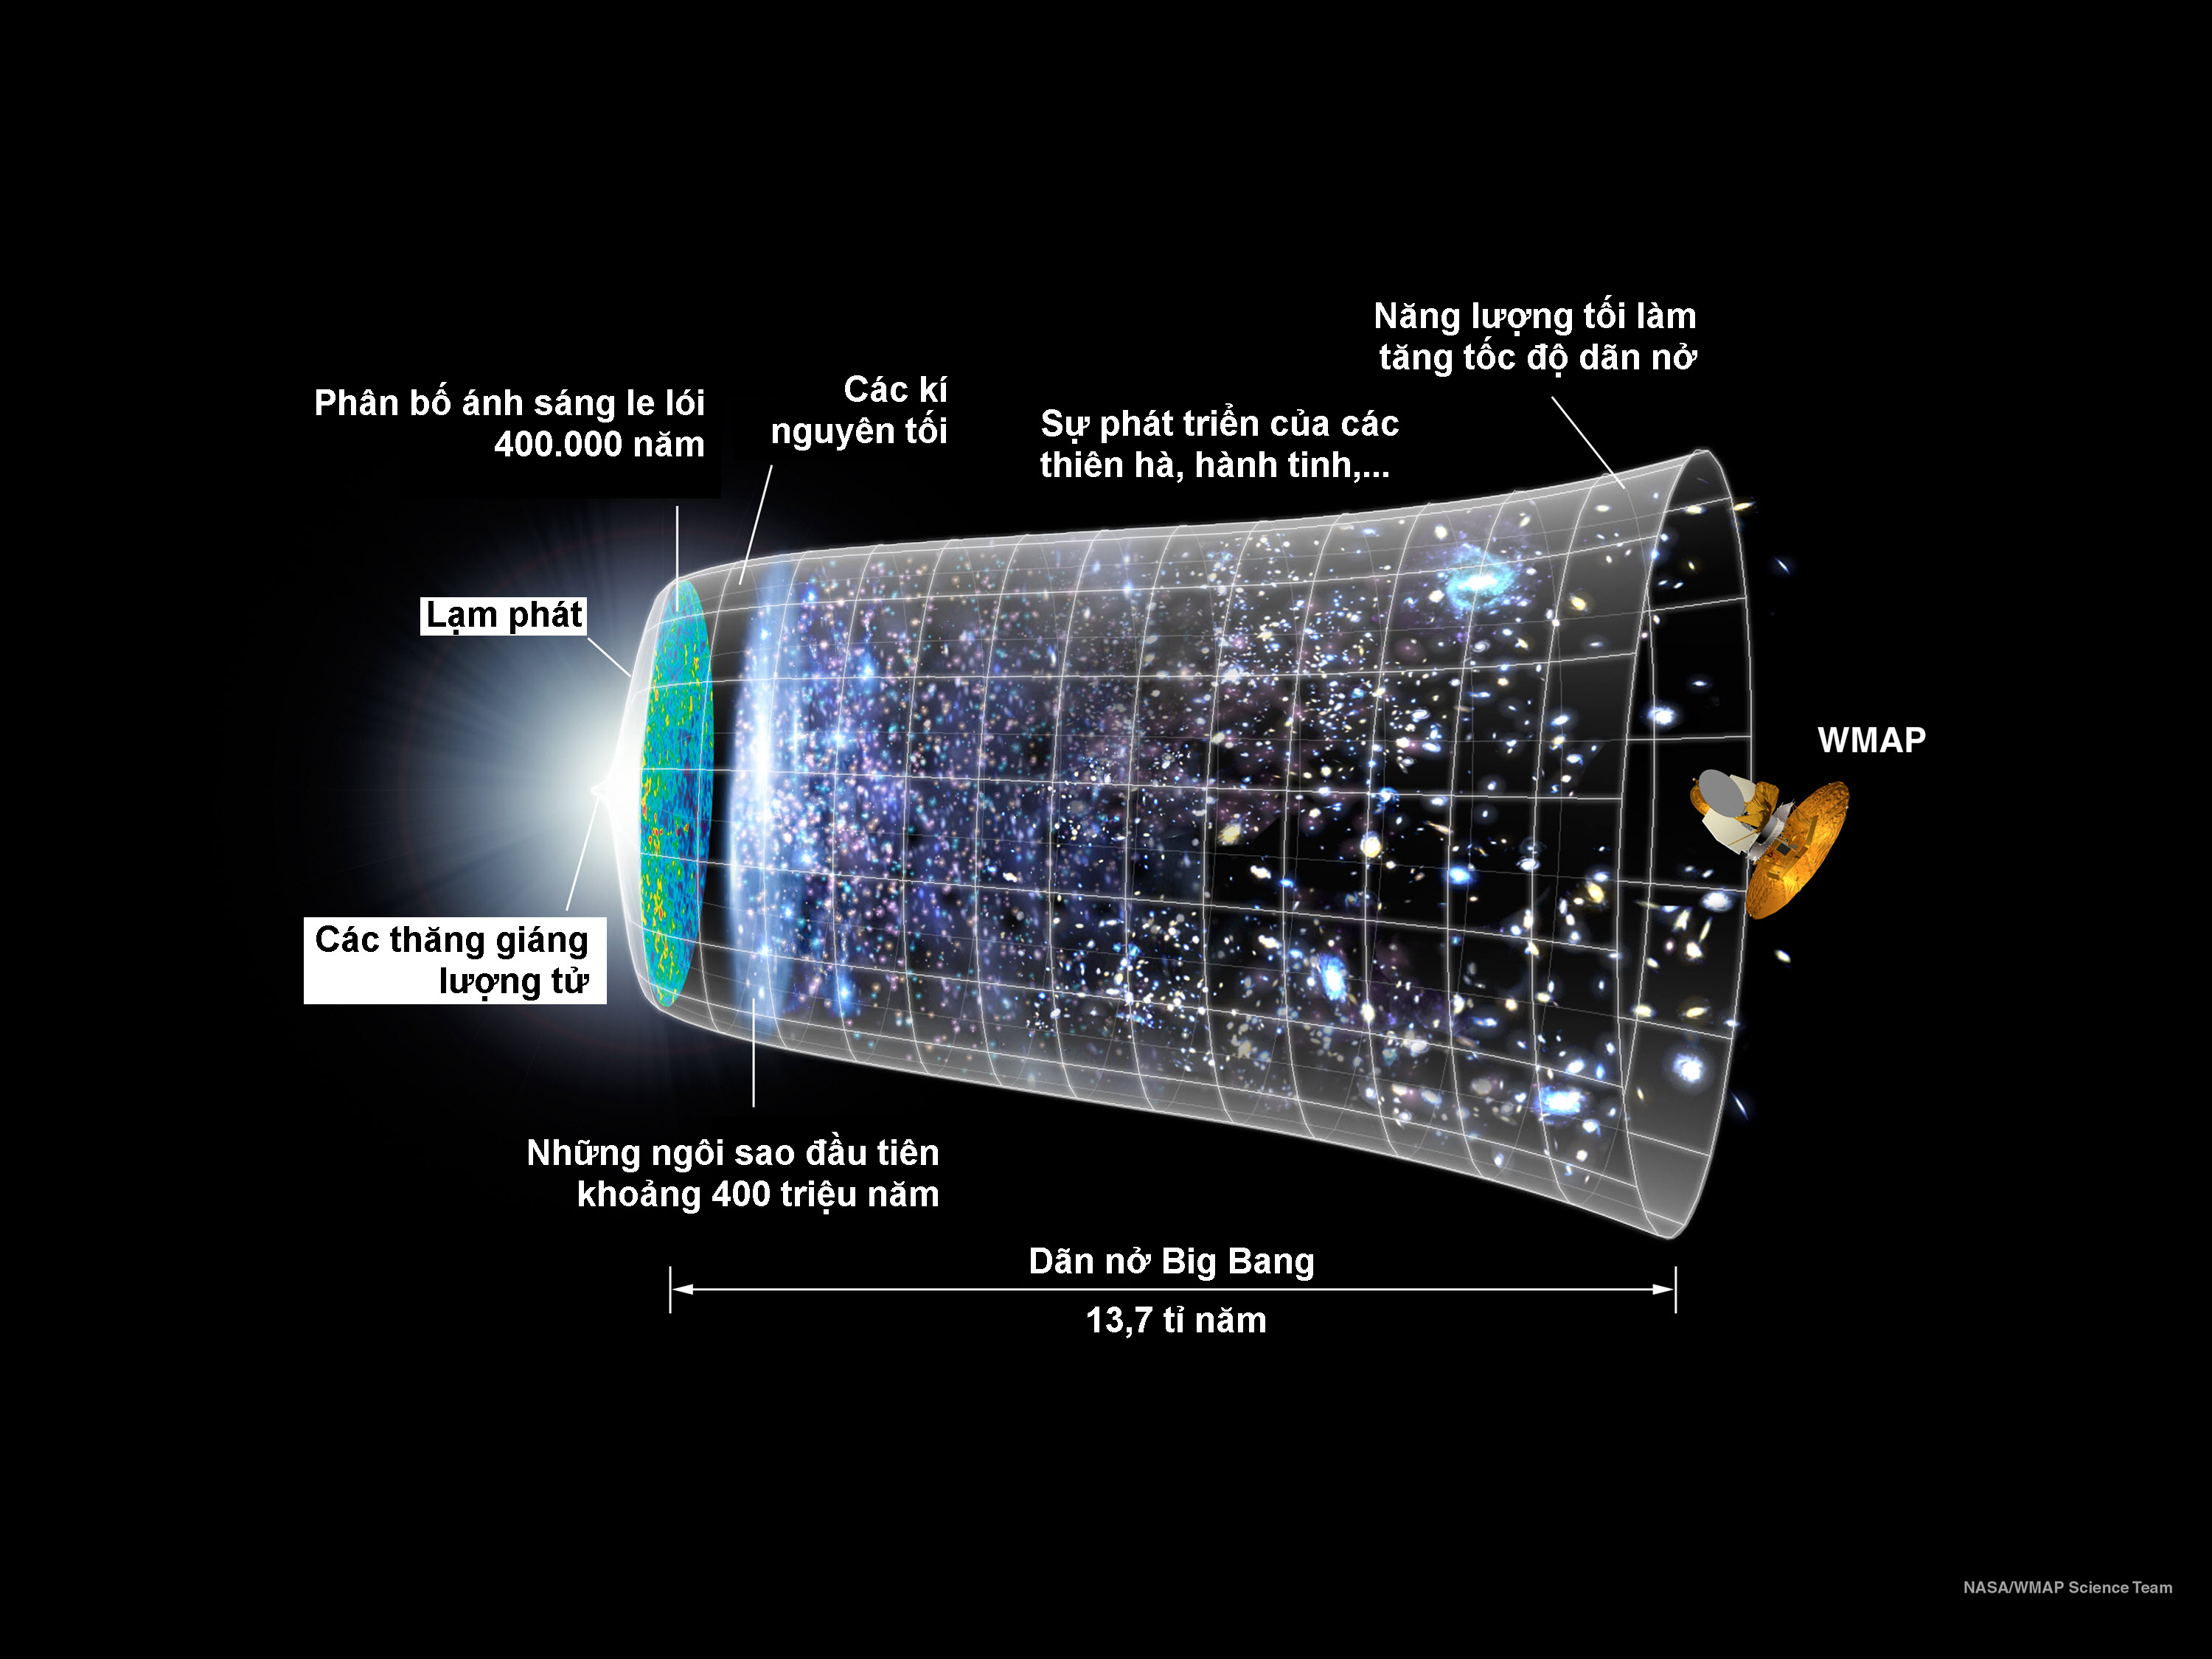 Hình minh họa tiến trình của vũ trụ dựa trên thuyết Big Bang